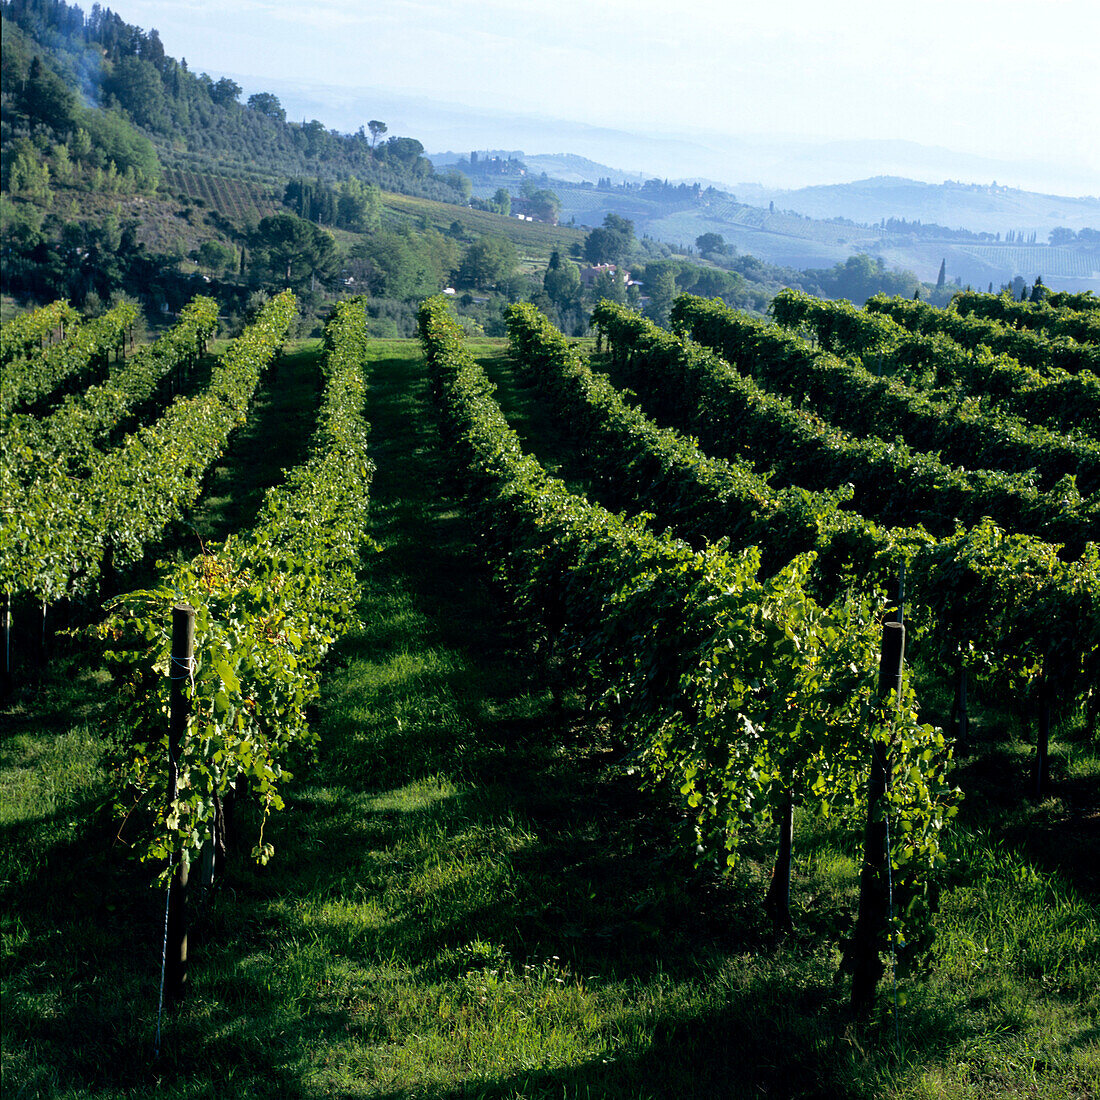 View over vineyard, San Gimignano, Tuscany, Italy